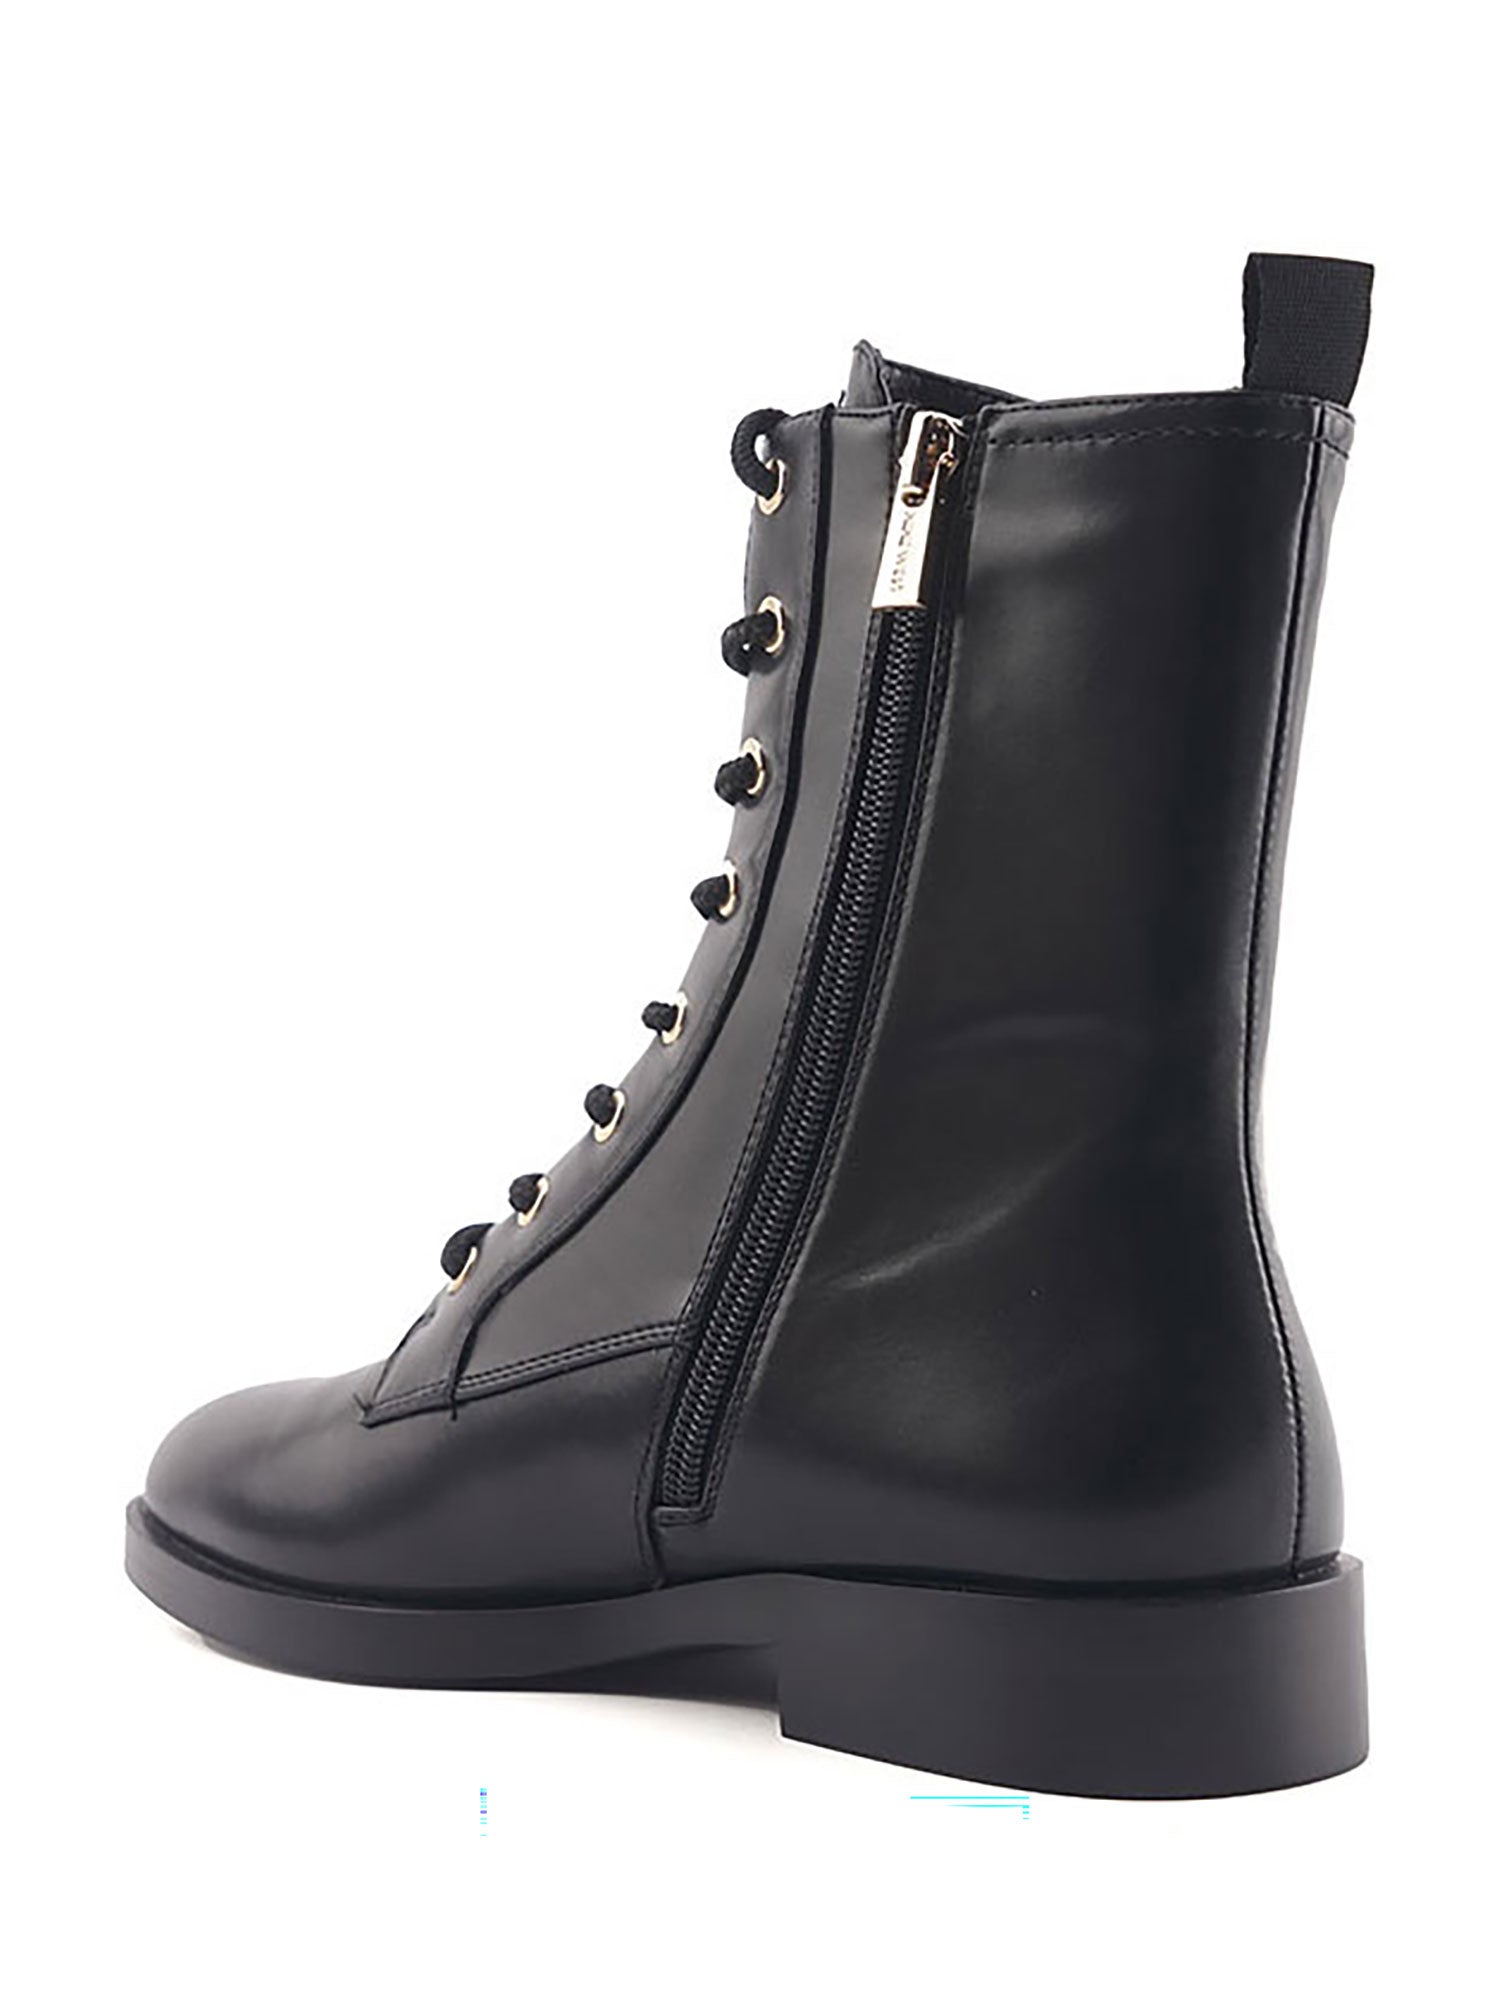 Salecia Boots - Black